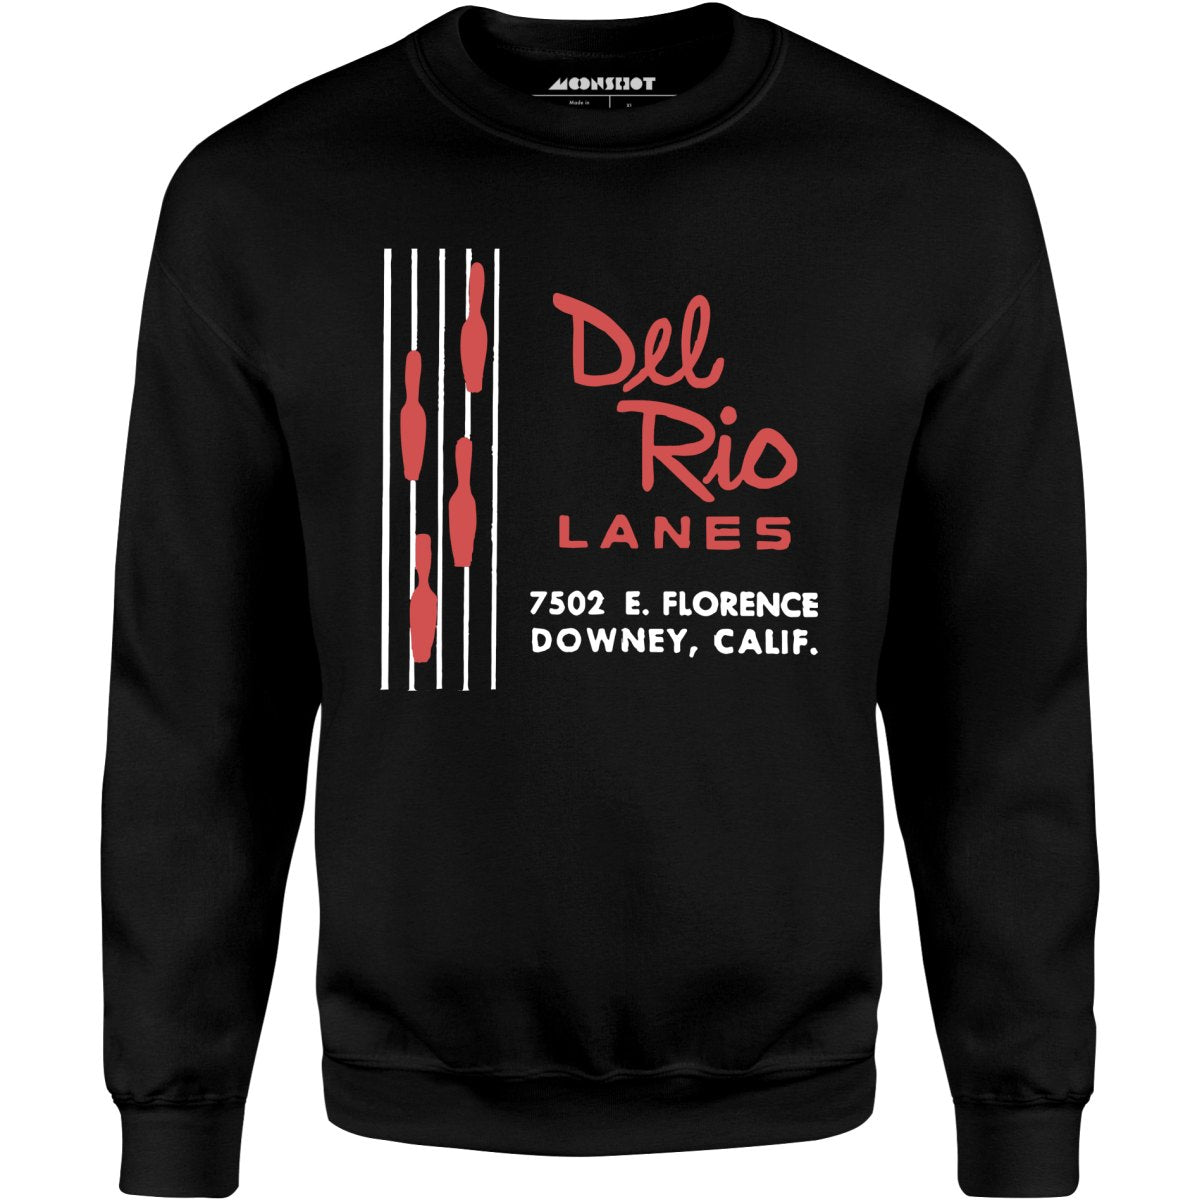 Del Rio Lanes - Downey, CA - Vintage Bowling Alley - Unisex Sweatshirt